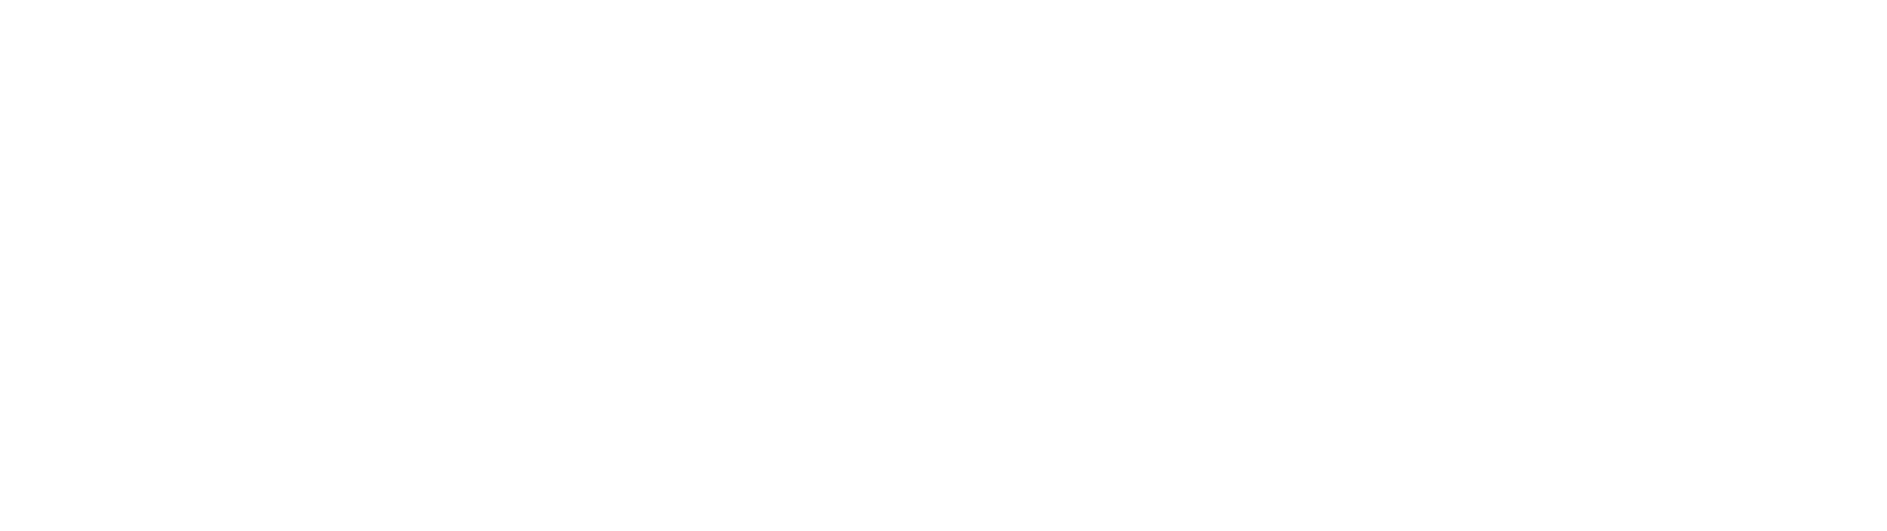 Becks_Logo.png